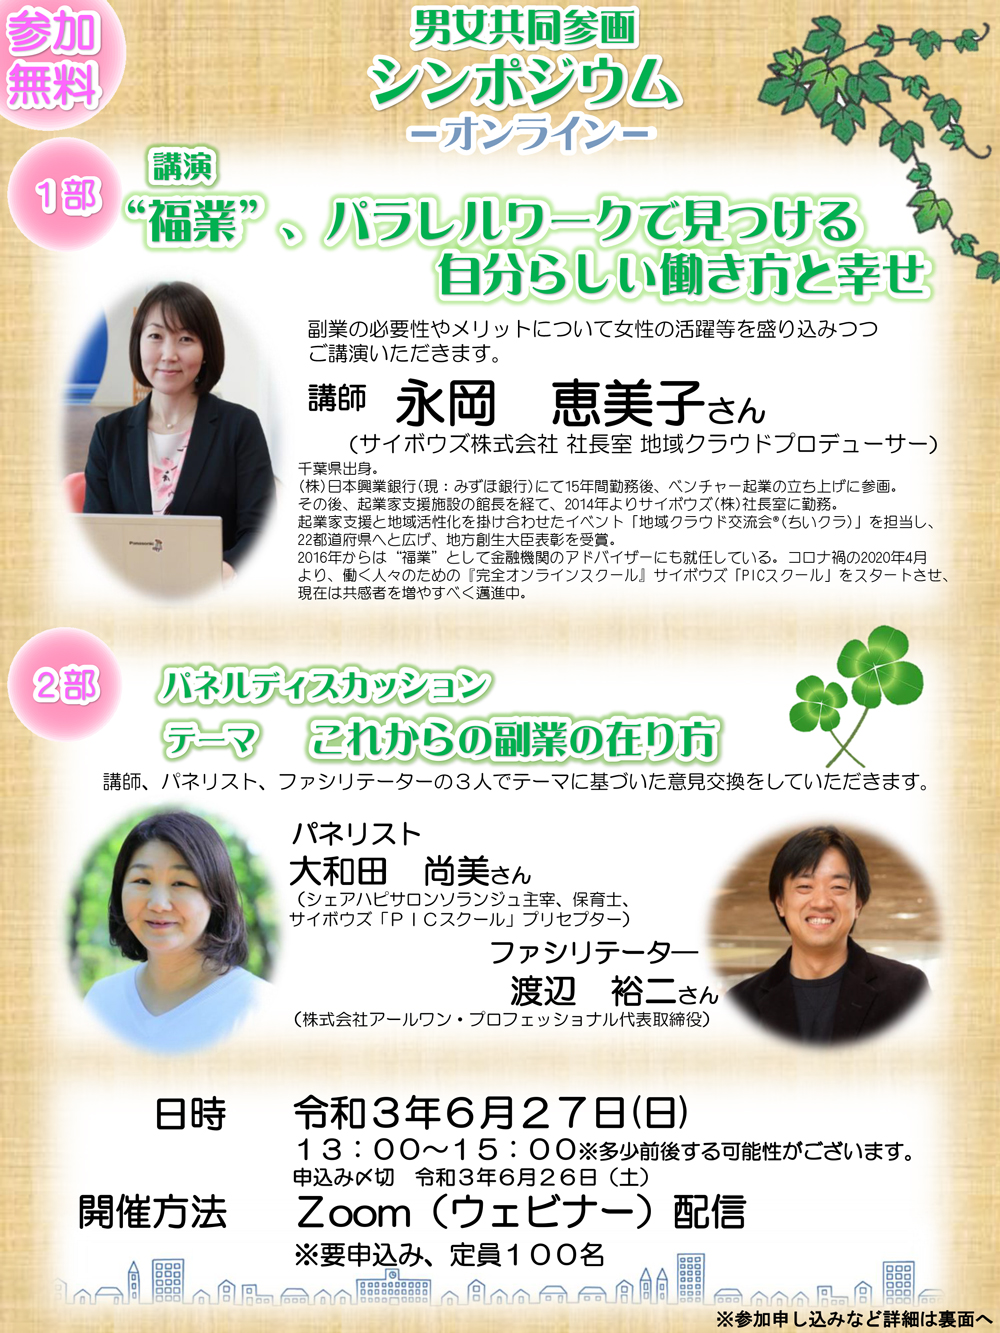 【イベント】千葉県男女共同参画センター主催イベントに代表渡辺が登壇いたします。